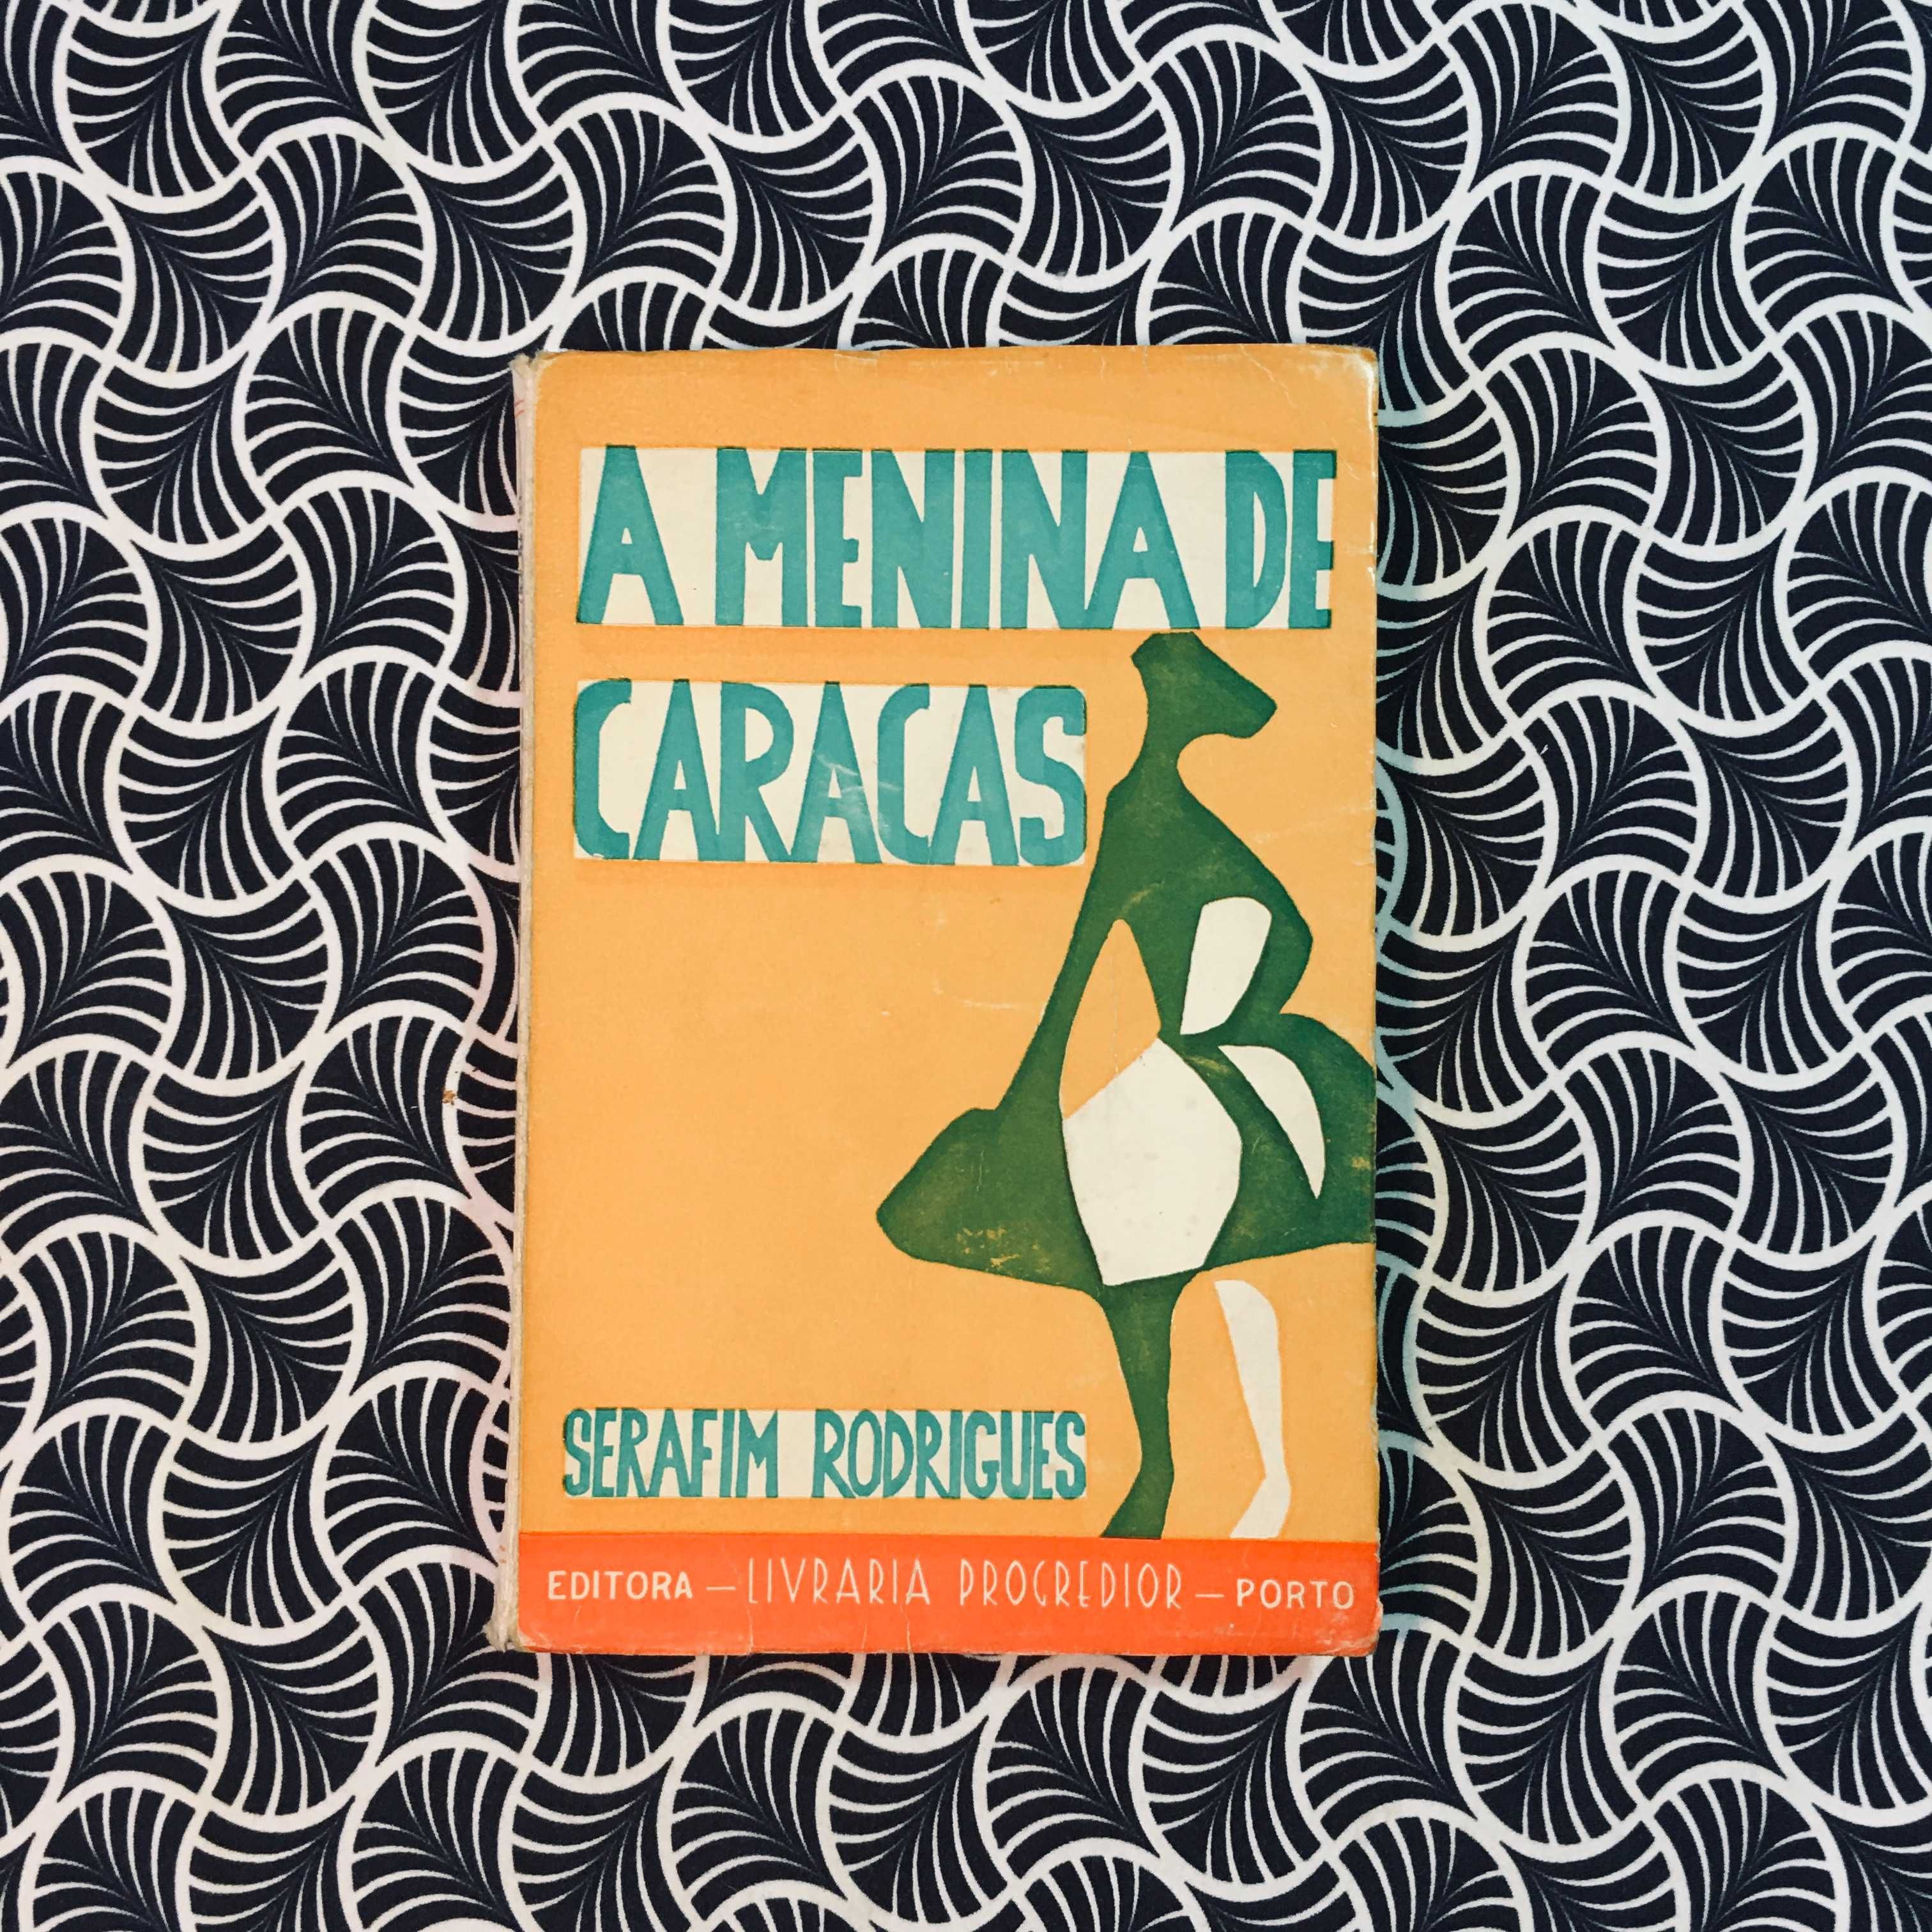 A Menina de Caracas - Serafim Rodrigues